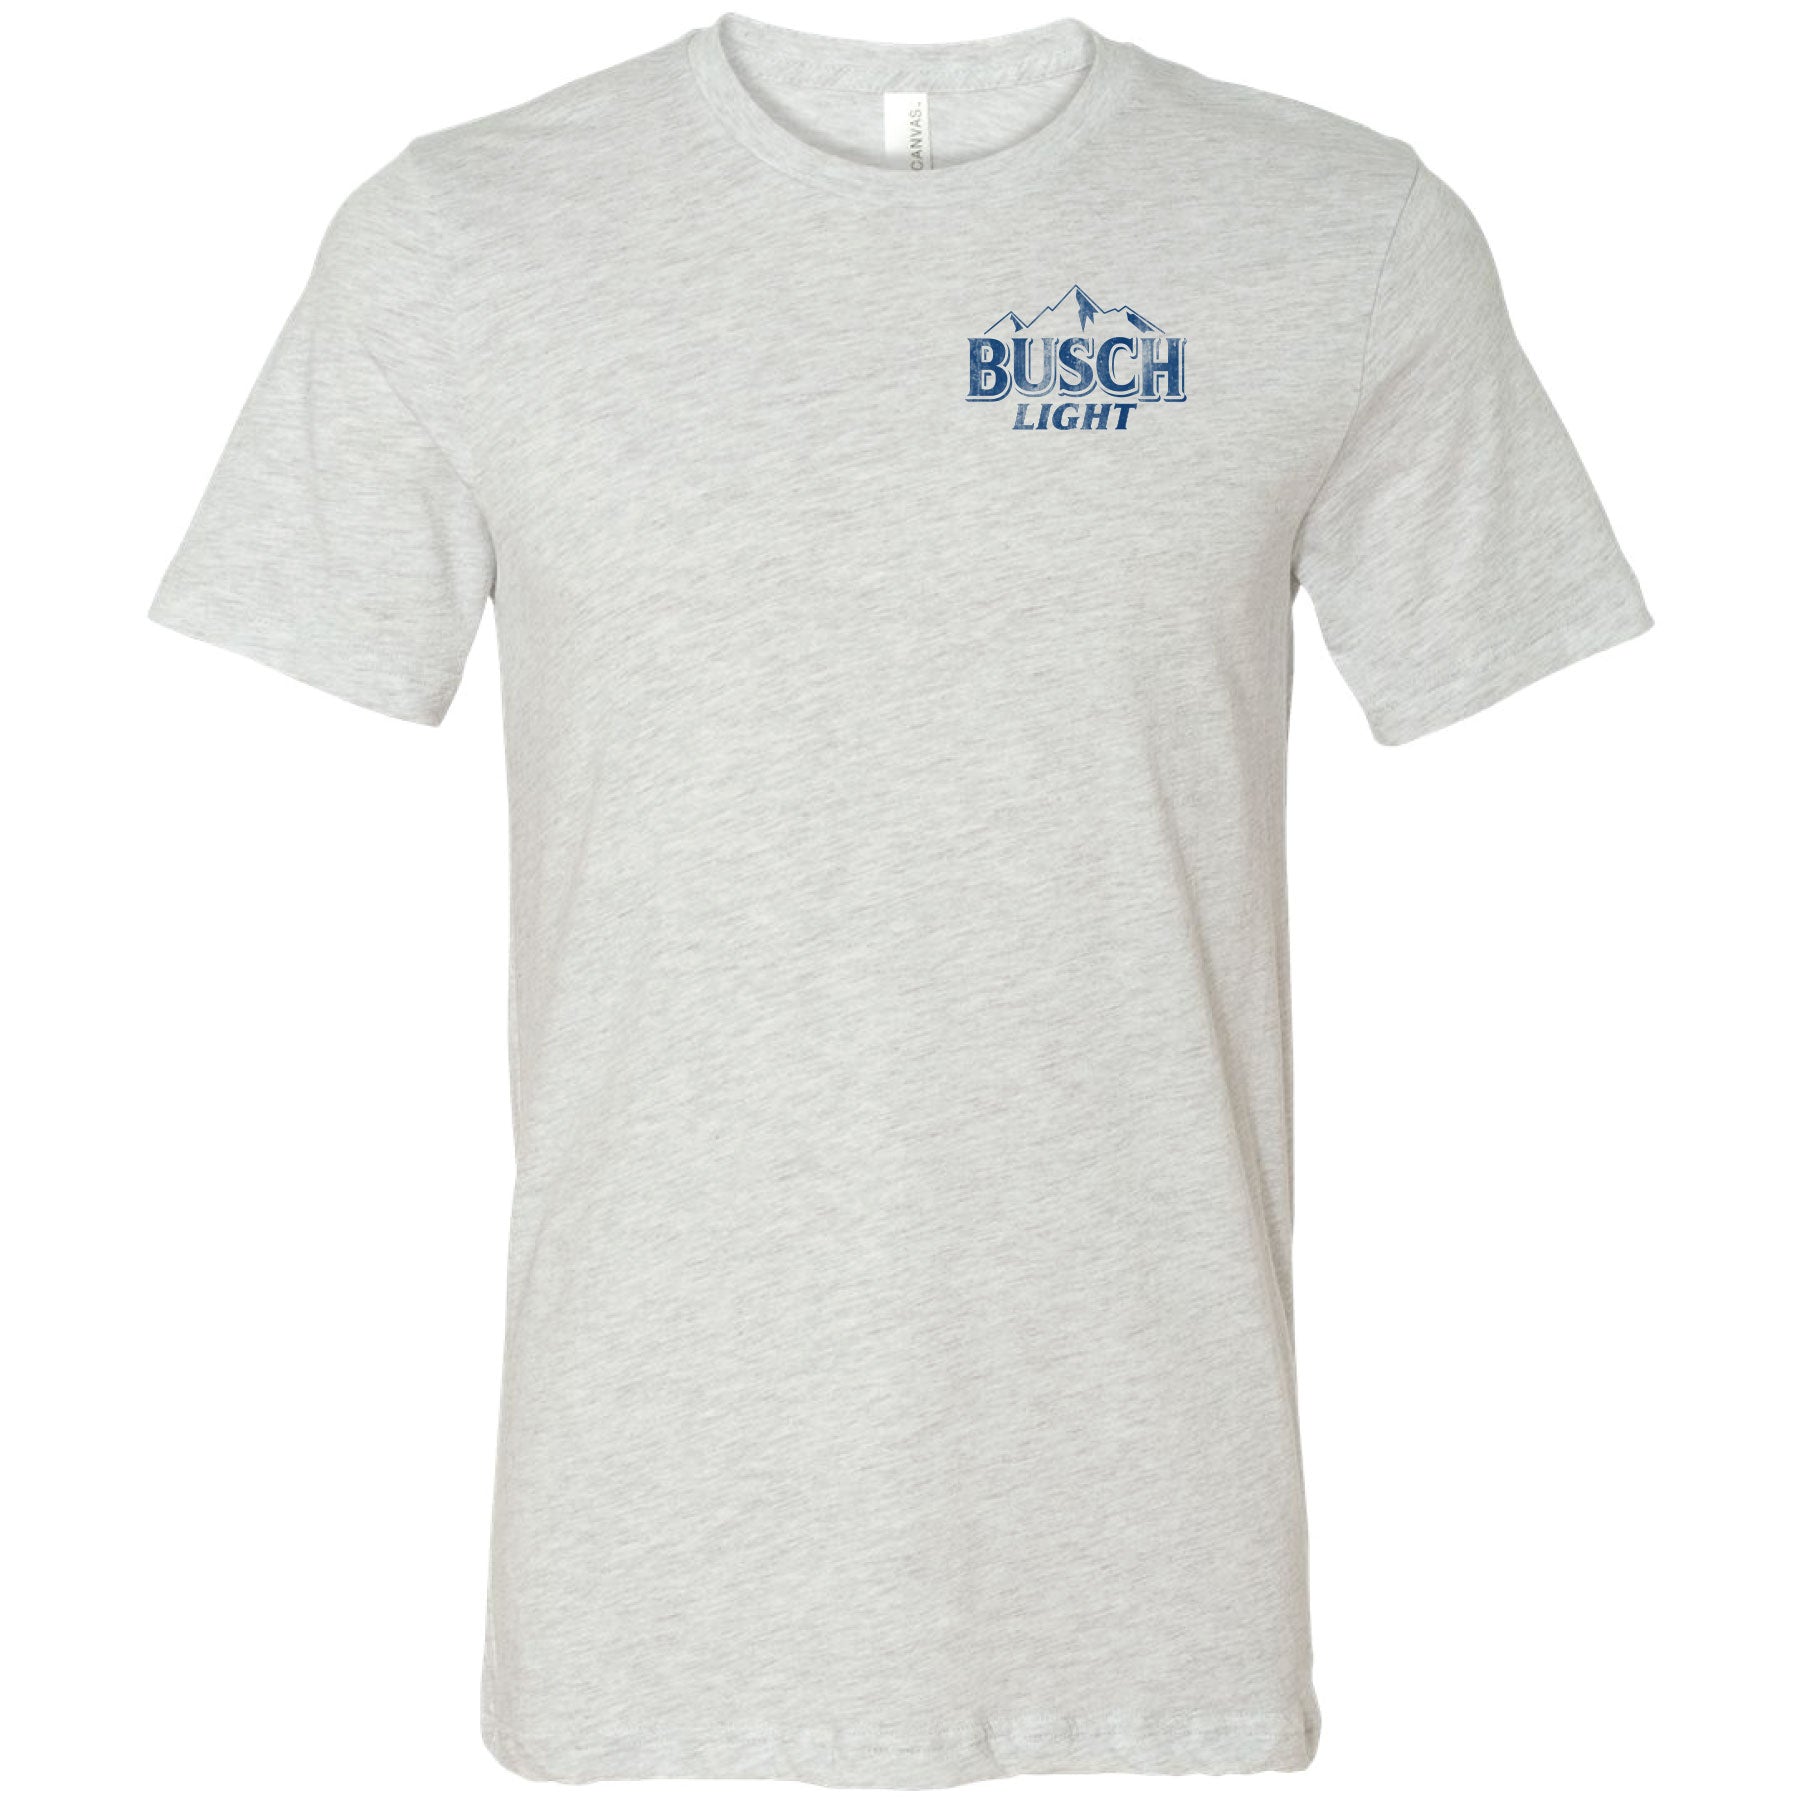 Busch Light Fishing Largemouth Bass T-Shirt